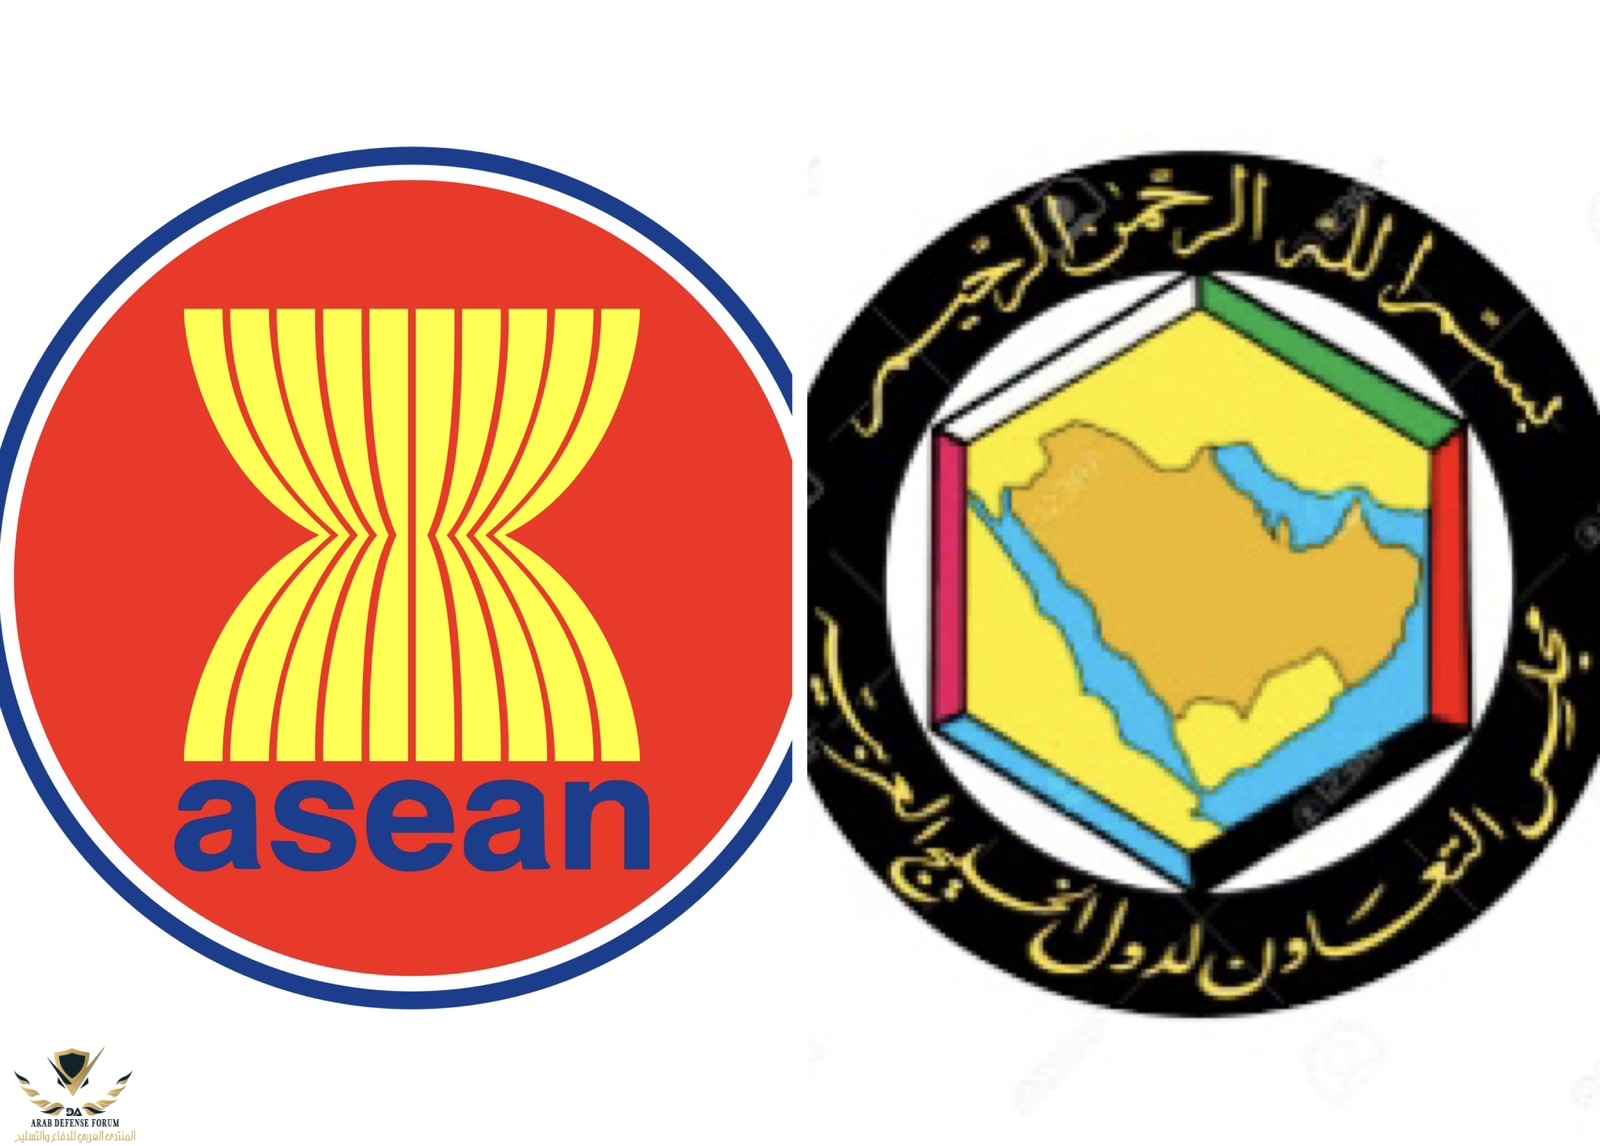 ASEAN_GCC_835c9cd90e.jpg